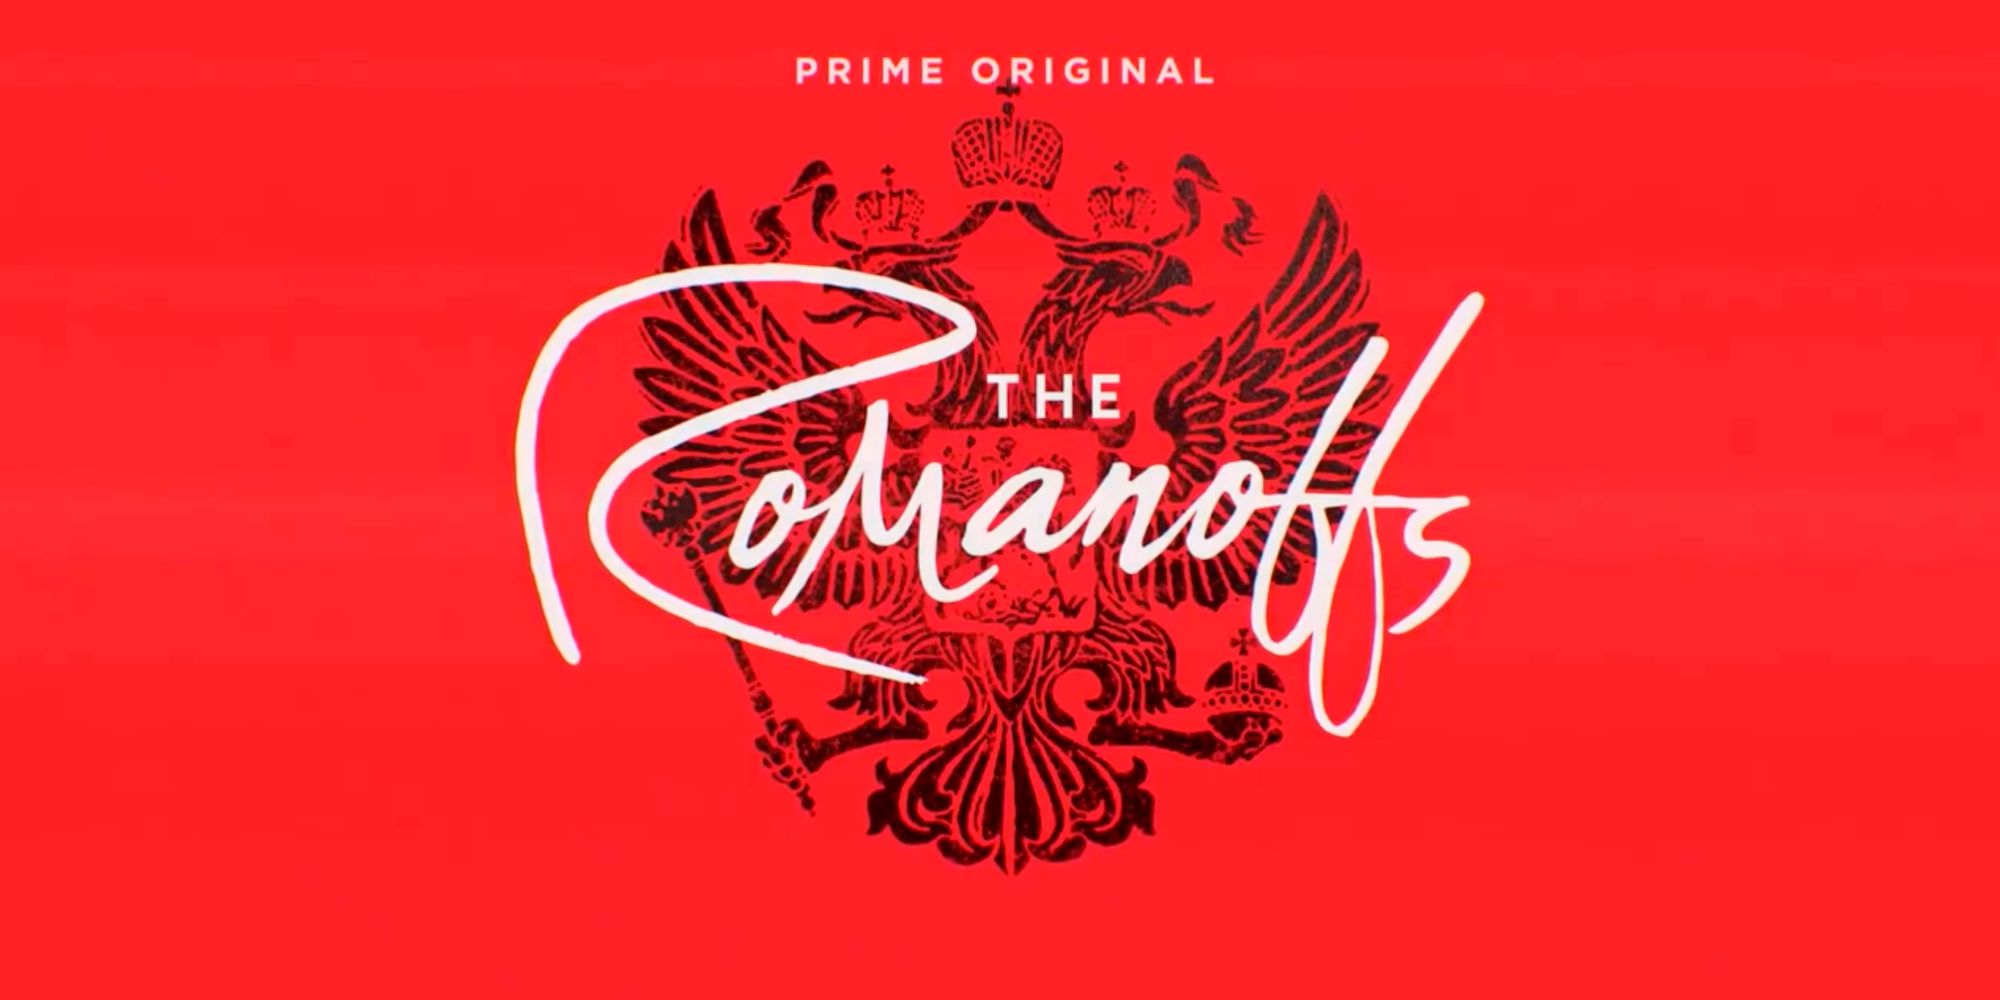 The Romanoffs Amazon Prime Video